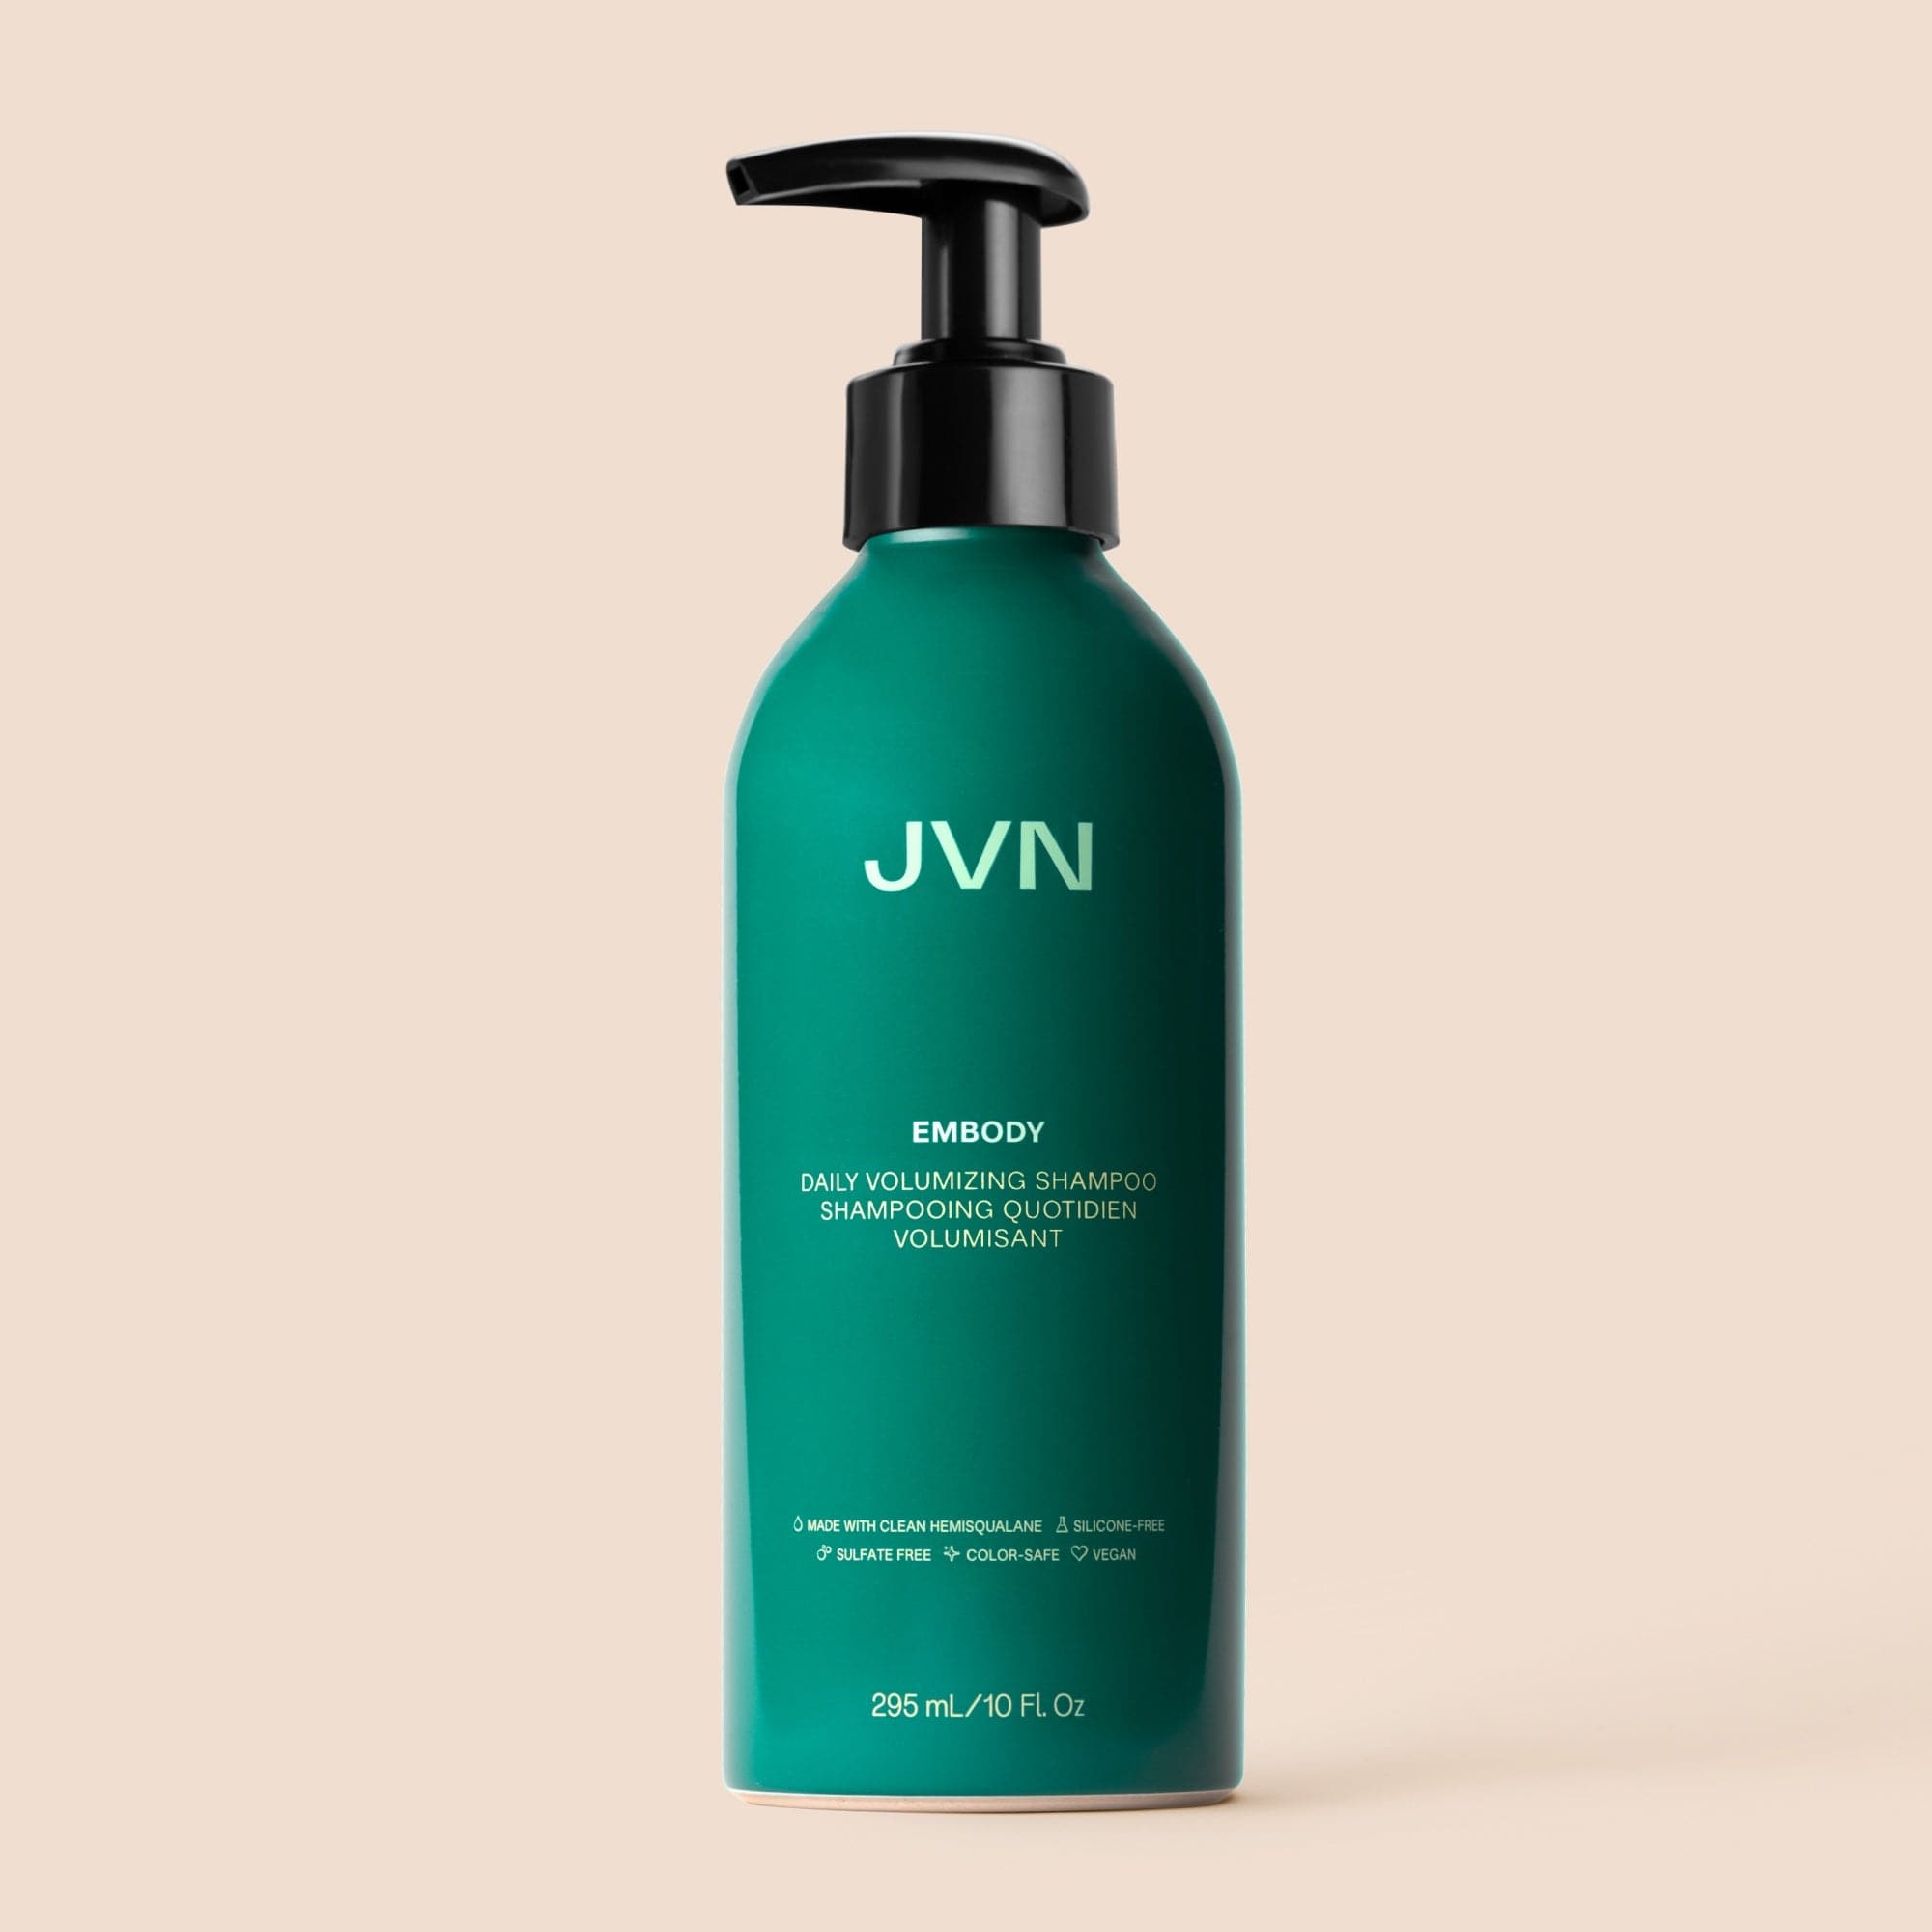 JVN Shampoo Embody Volumizing Shampoo Embody Volumizing Shampoo | Shampoo For Body + Fullness | JVN sulfate-free silicone-free sustainable